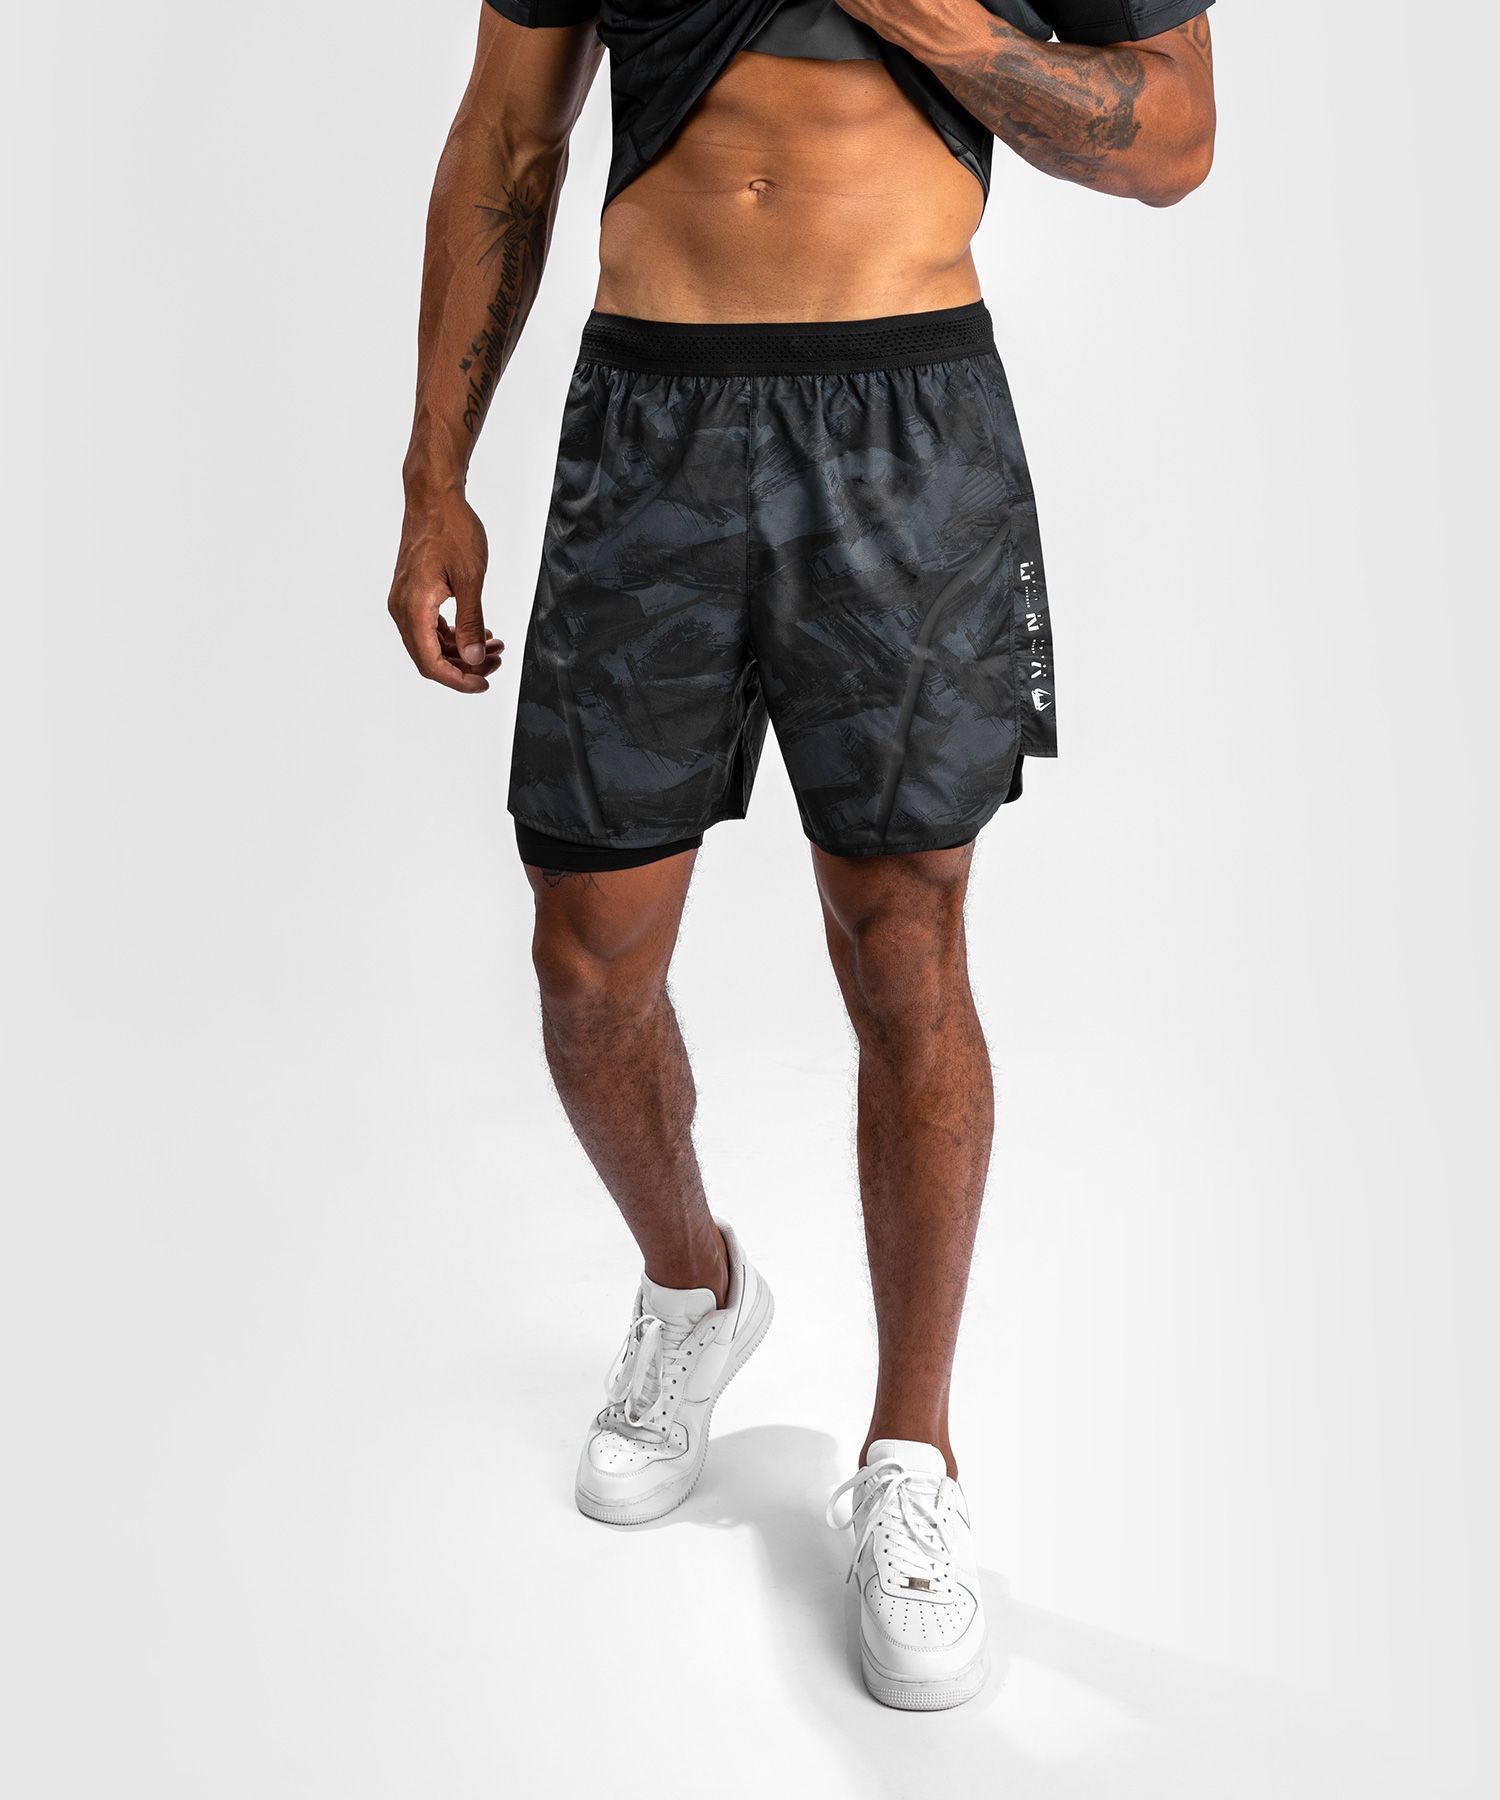 Шорты мужские Venum Electron 3.0 Training Shorts черные XL